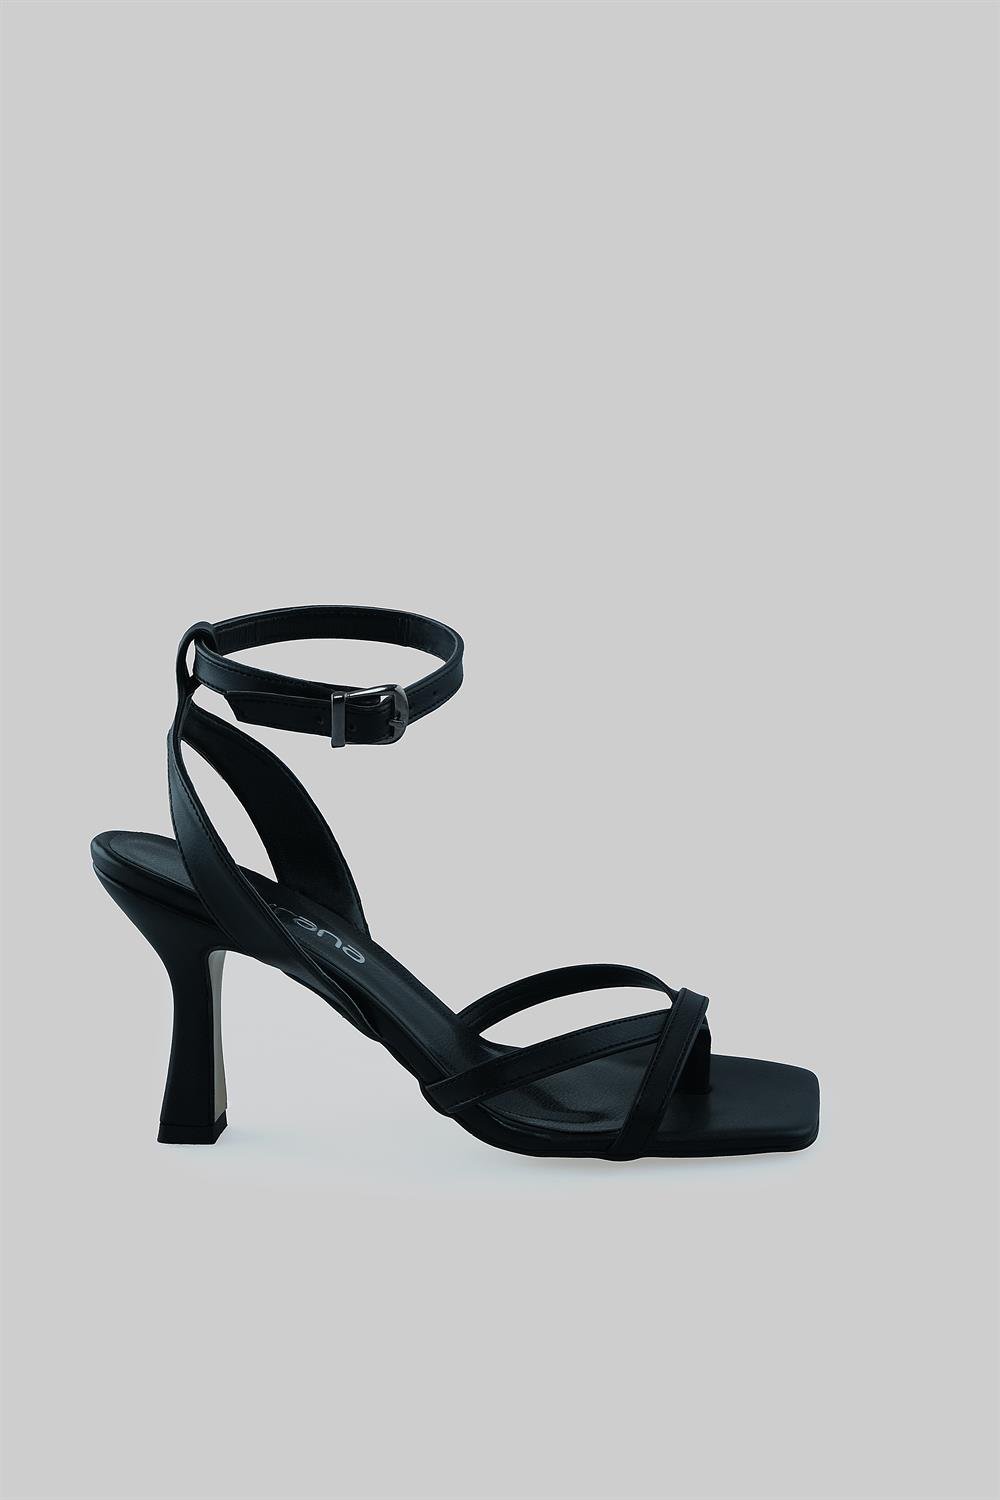 Önü Açık Çapraz Bantlı Parmak Arası Detaylı Topuklu Ayakkabı Nichola Model  | SOVRANA